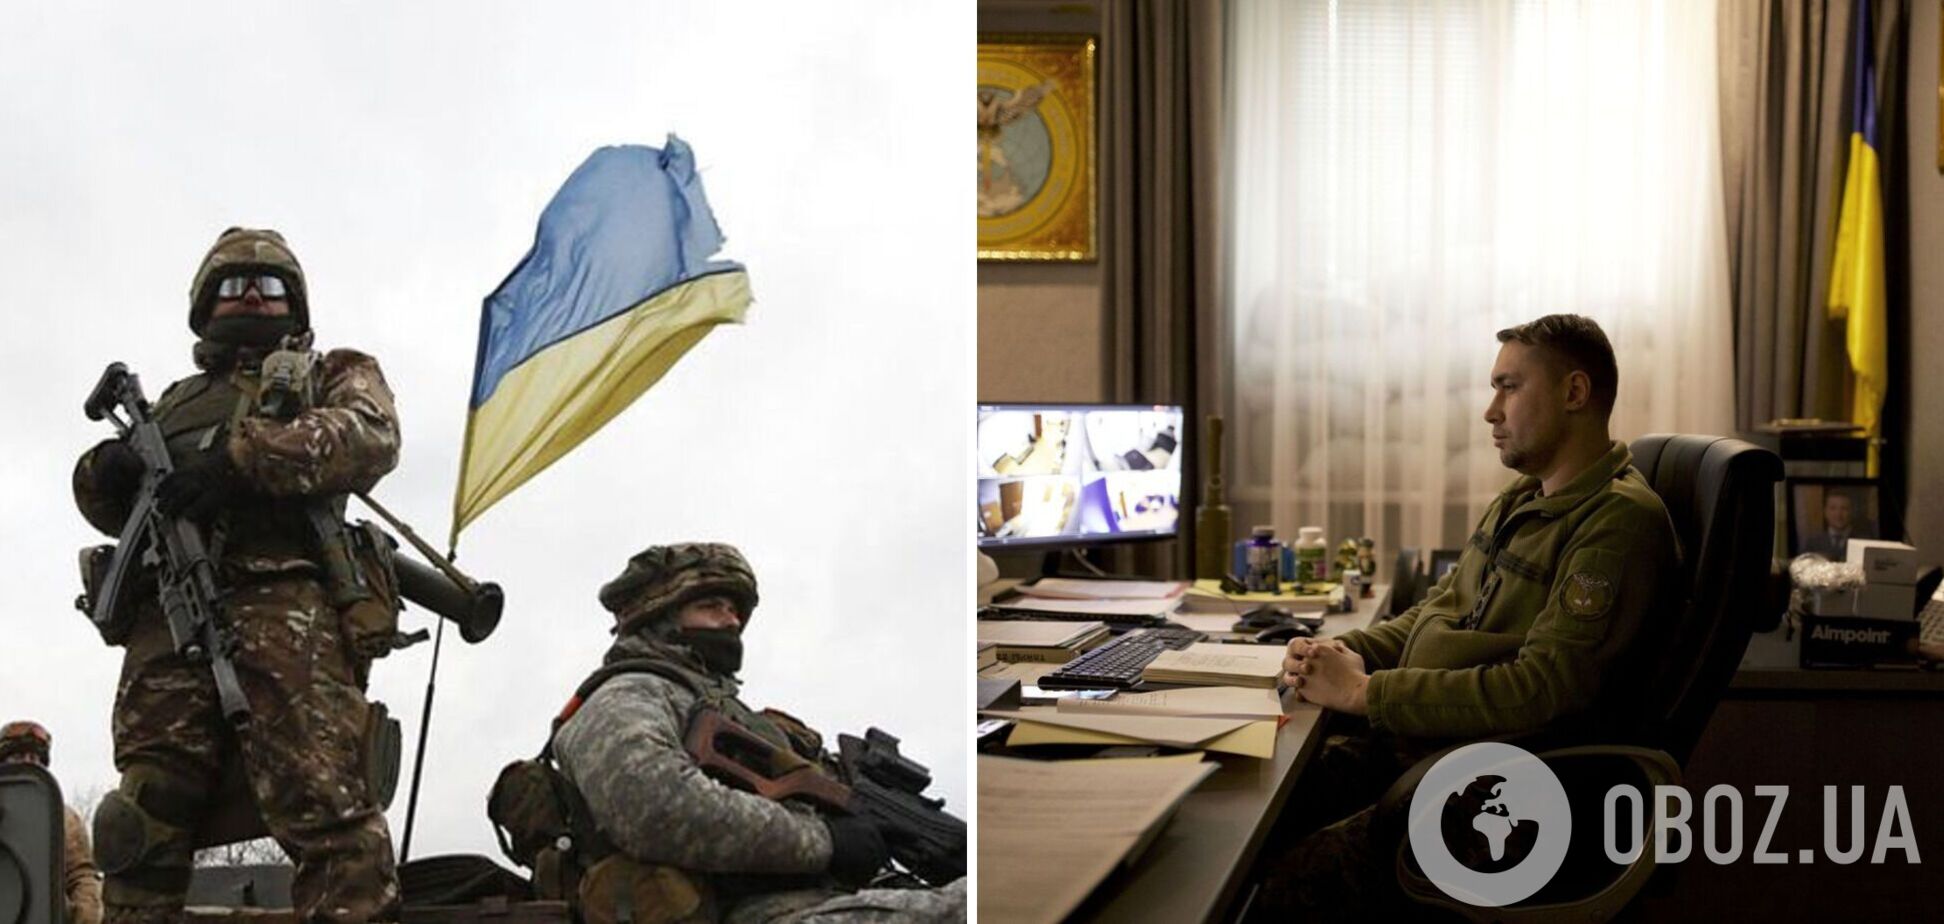 Буданов: Украина будет воевать до тех пор, пока с ее территории не будут изгнаны все войска РФ